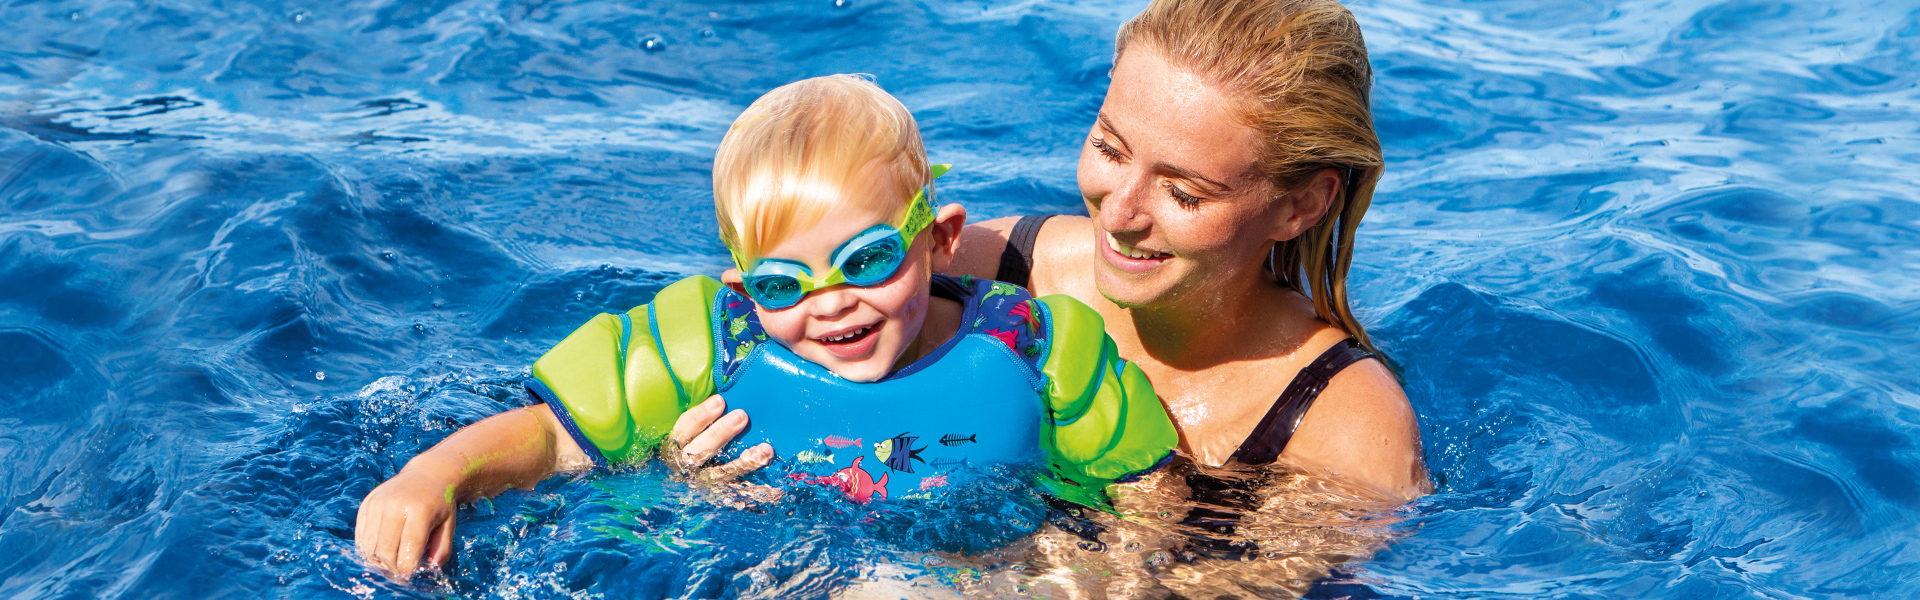 Summer Sun Safety Tips Sun Protection Swimwear